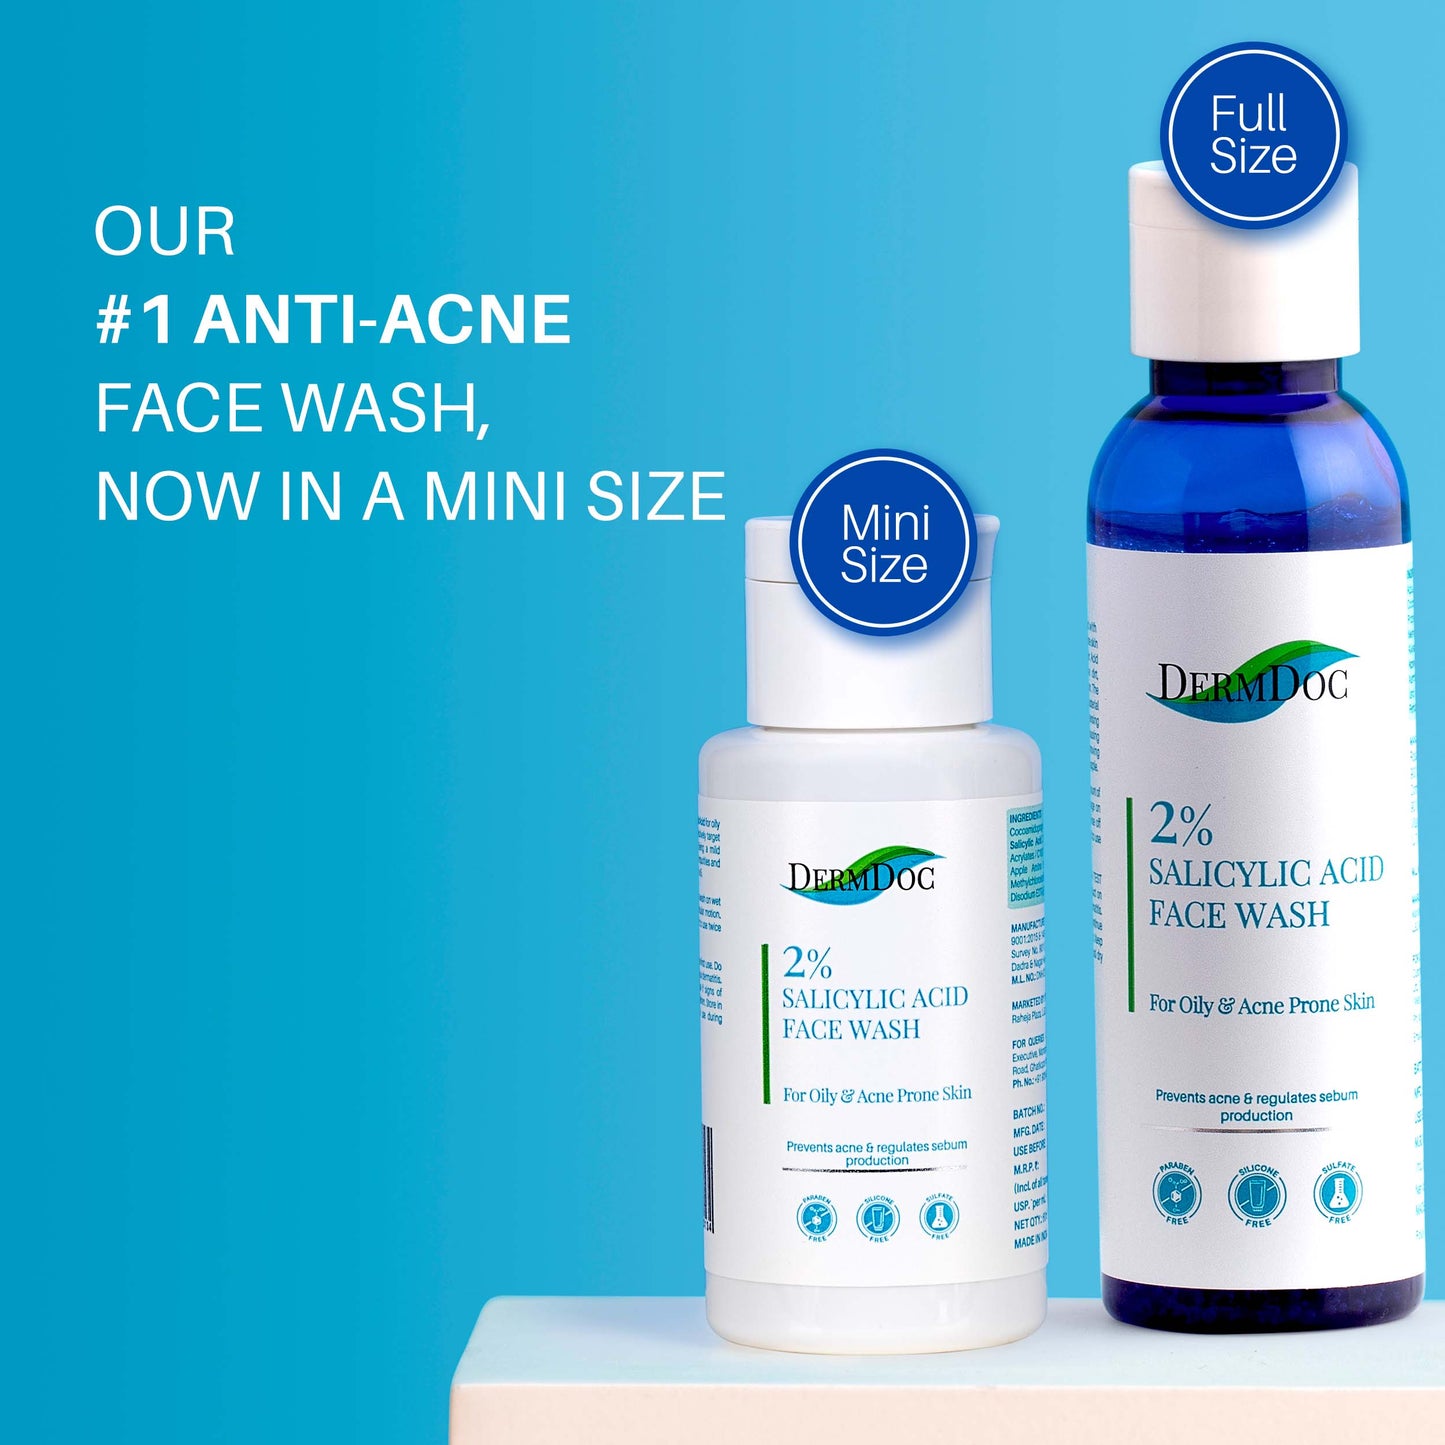 DermDoc 2% Salicylic Acid Anti Acne Face Wash For Clear & Acne Free Skin (60ml)